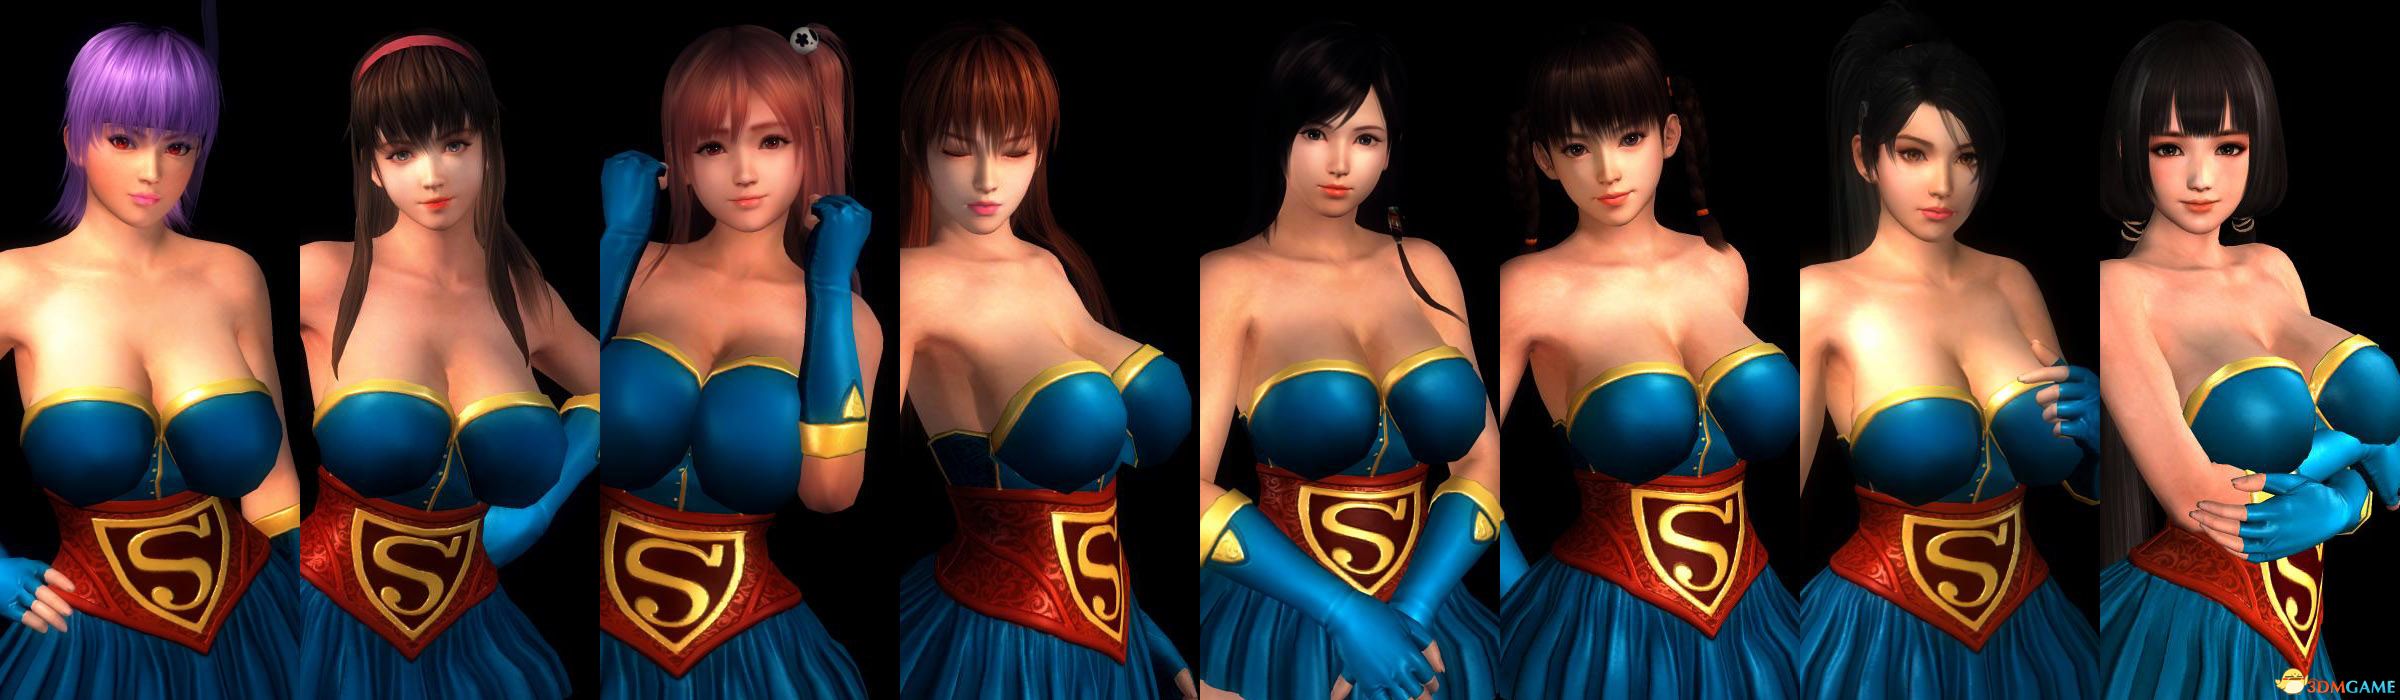 死或生5:最后一战 女超人服装mod